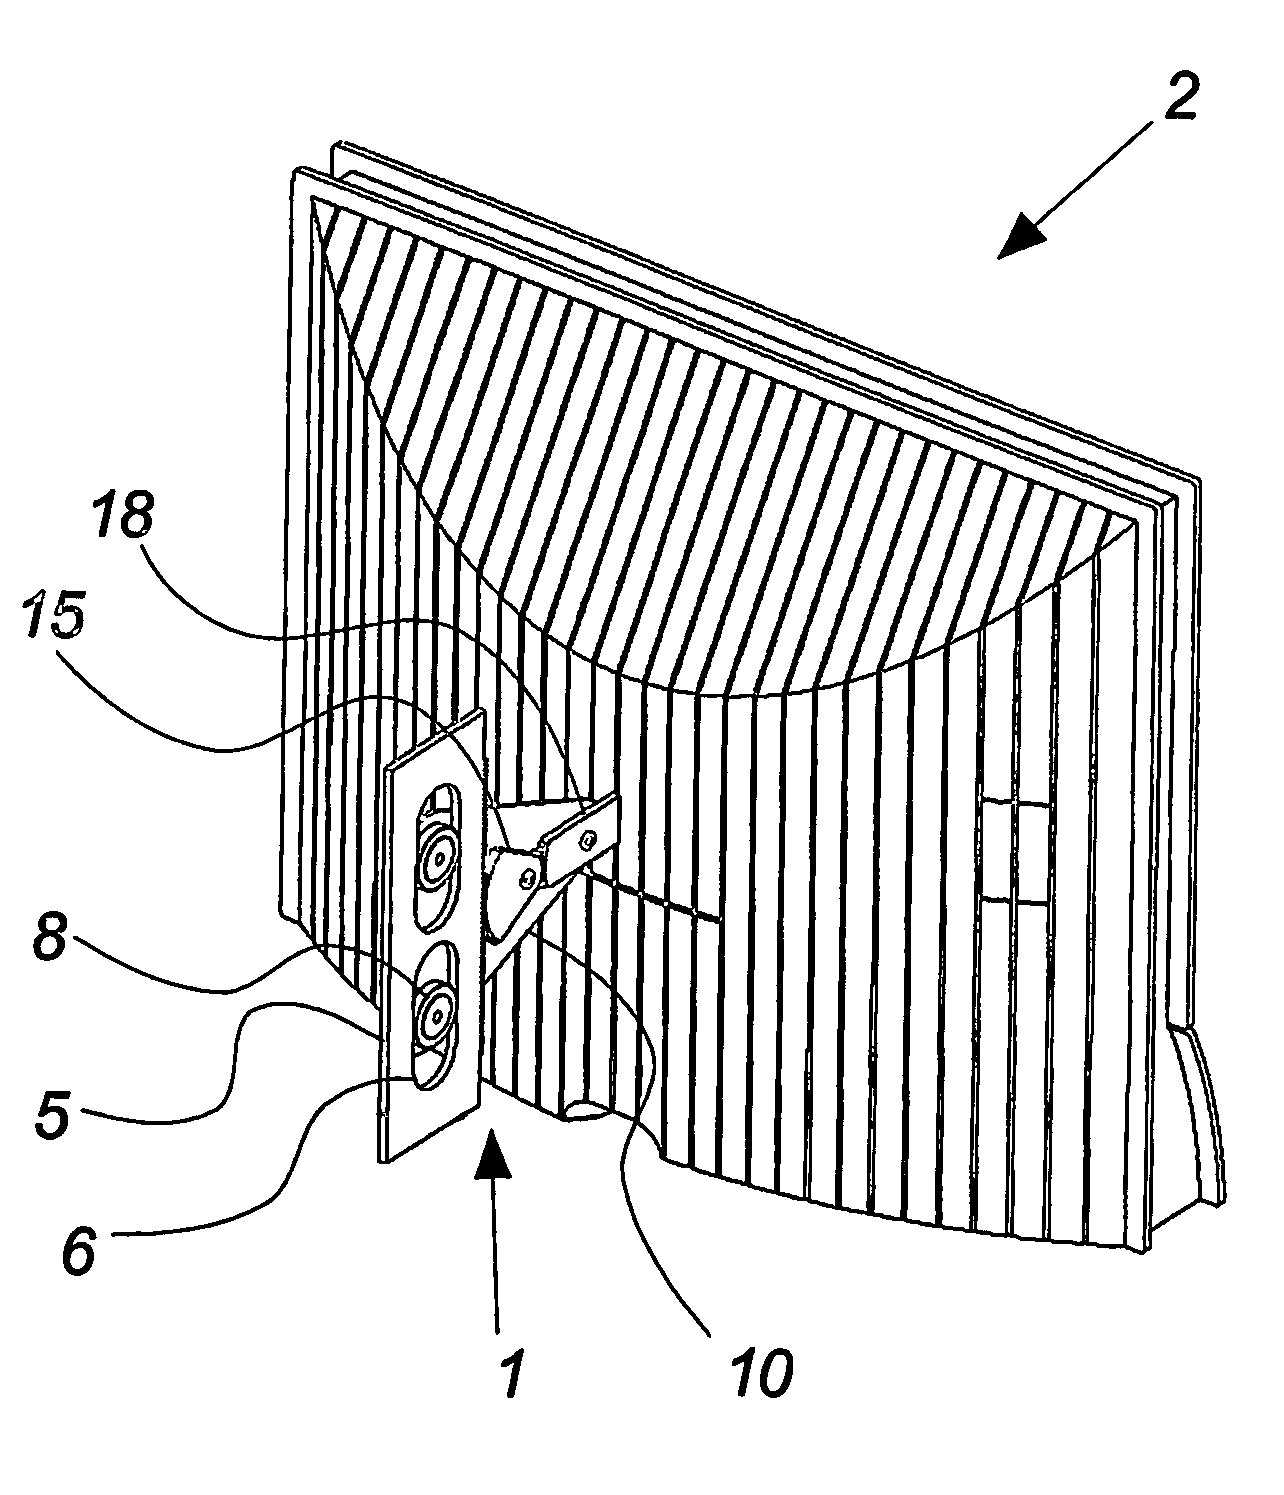 Tilt mechanism